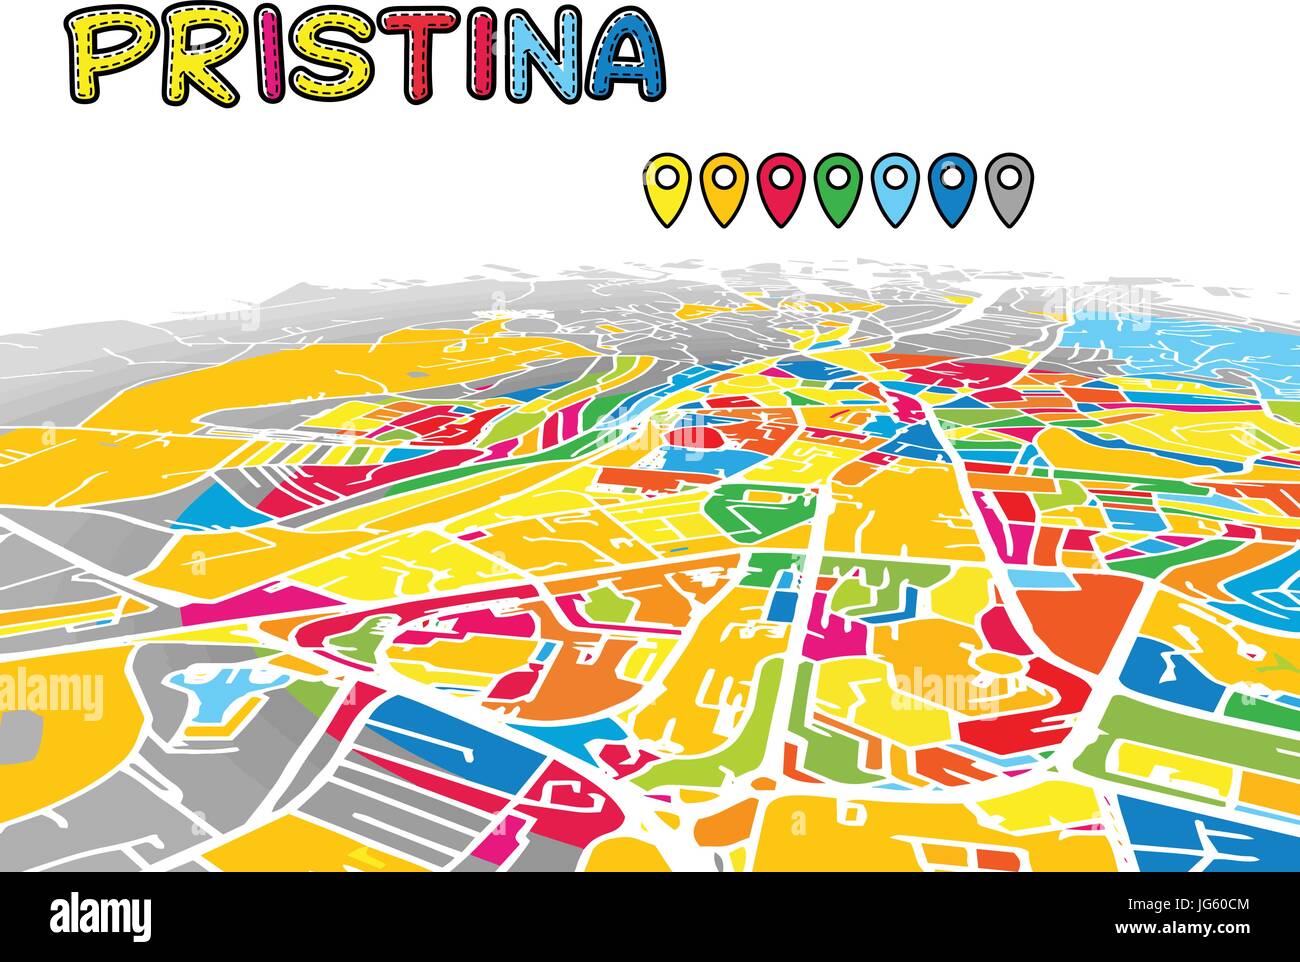 Pristina, Kosovo, le centre-ville de vecteur 3D Plan de célèbres rues. Avant-plan lumineux plein de couleurs. Les rues, les cours d'eau et blanc fond gris areal. Whit Illustration de Vecteur